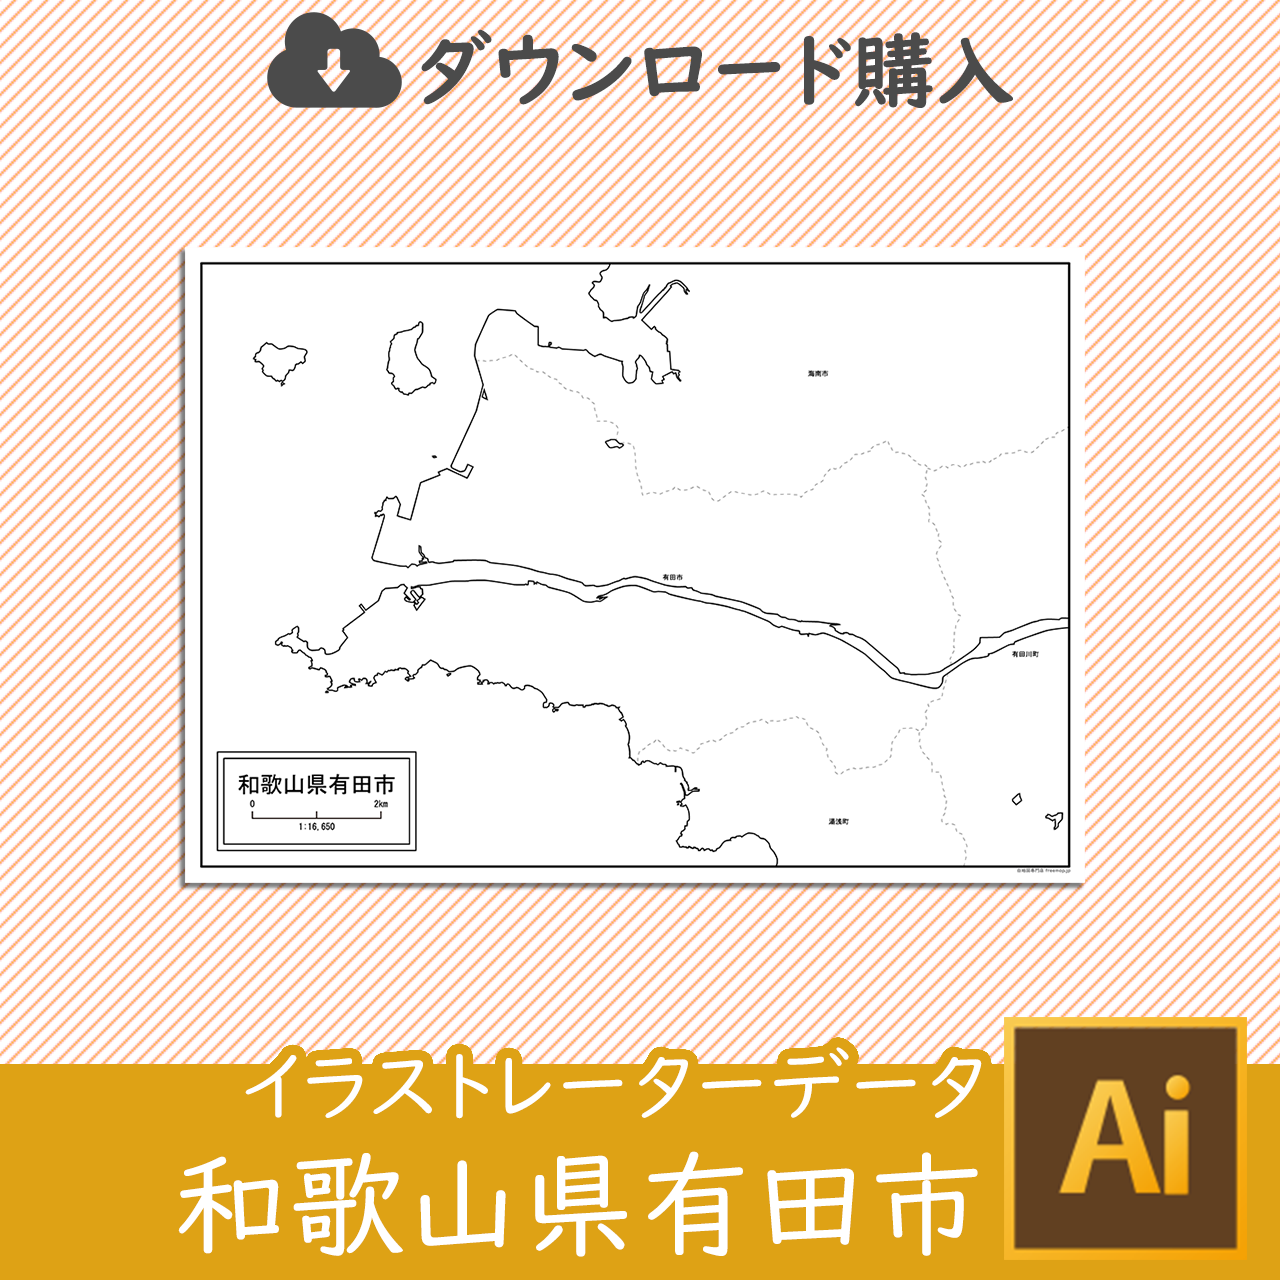 有田市の白地図のサムネイル